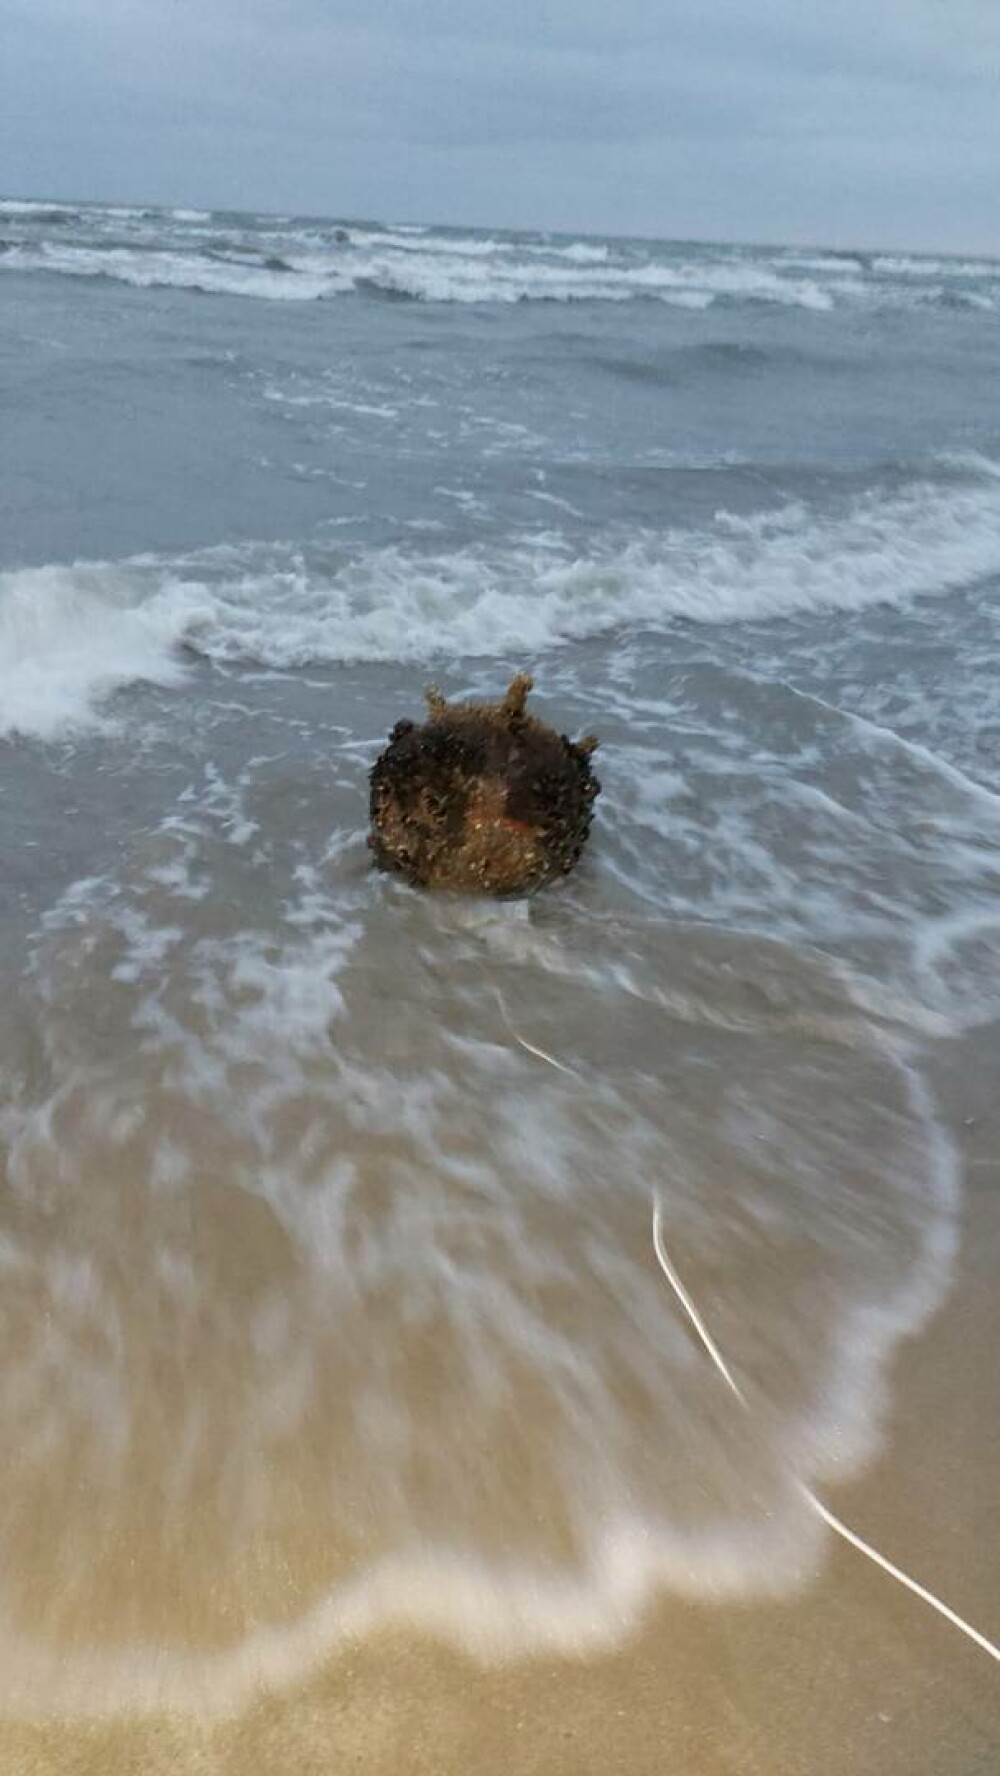 Mina marină descoperită de poliţiştii de frontieră pe plajă, în zona localităţii Sfântu Gheorghe, neutralizată - Imaginea 9